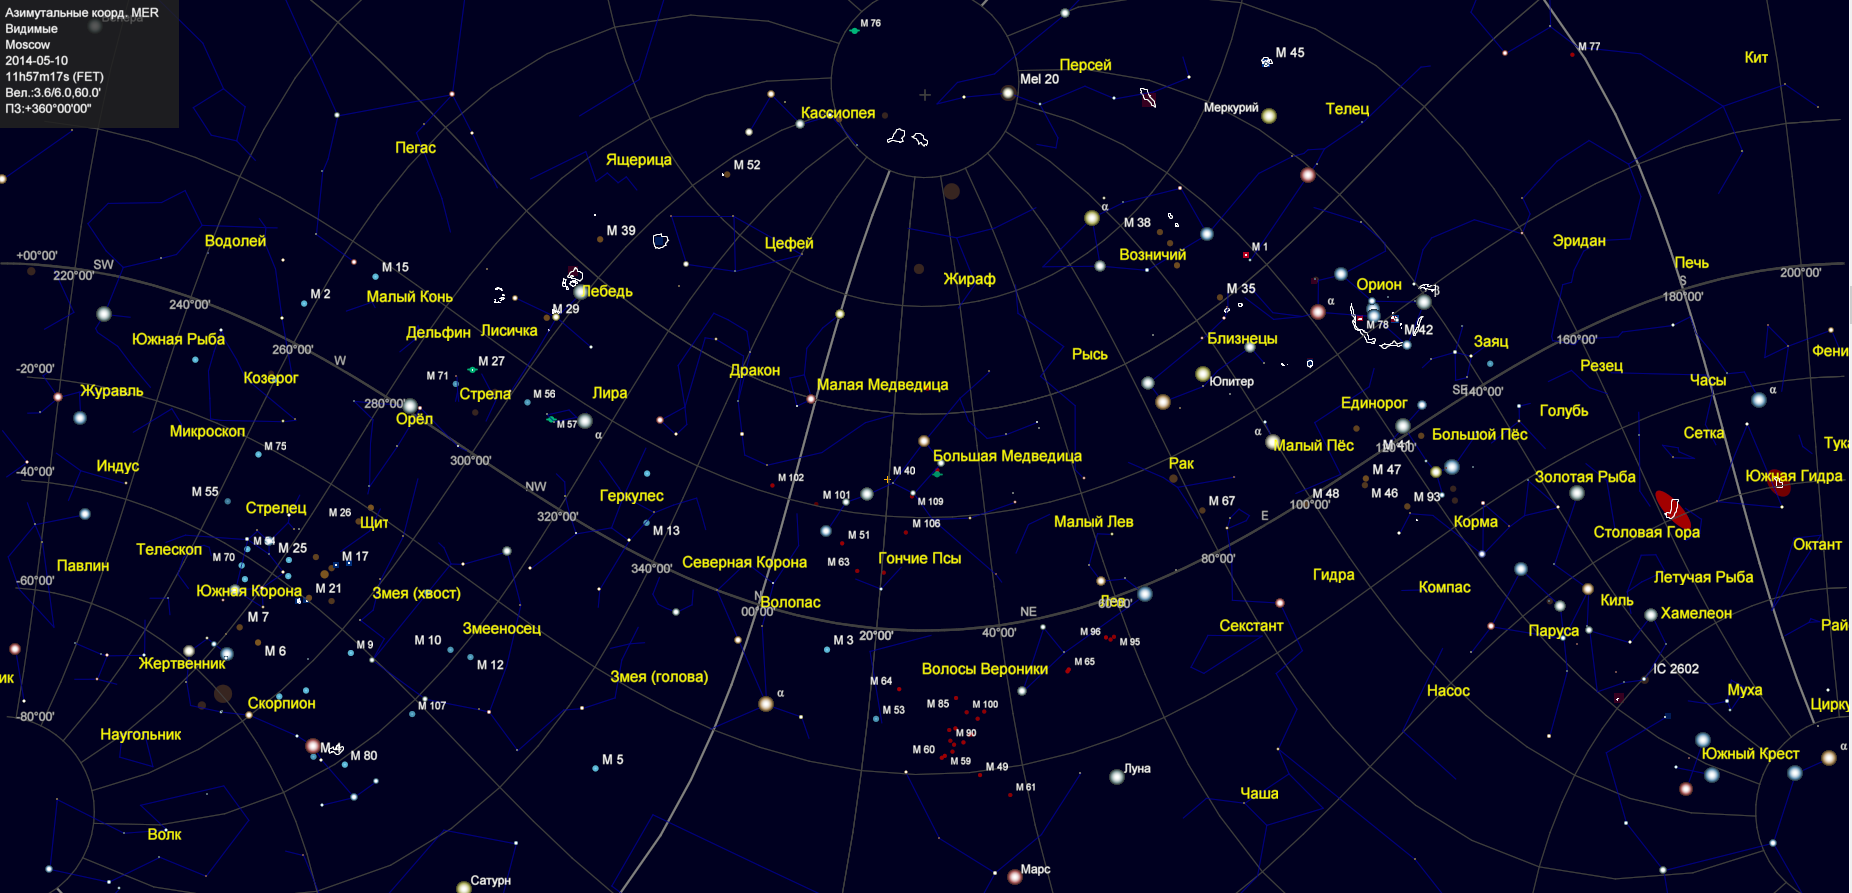 Созвездия северного полушария названия. Созвездие Плеяды на карте звездного неба. Карта звездного неба с названиями звезд Северного полушария. Полярная звезда на карте звездного неба Северного полушария. Карта звездного неба 88 созвездий.